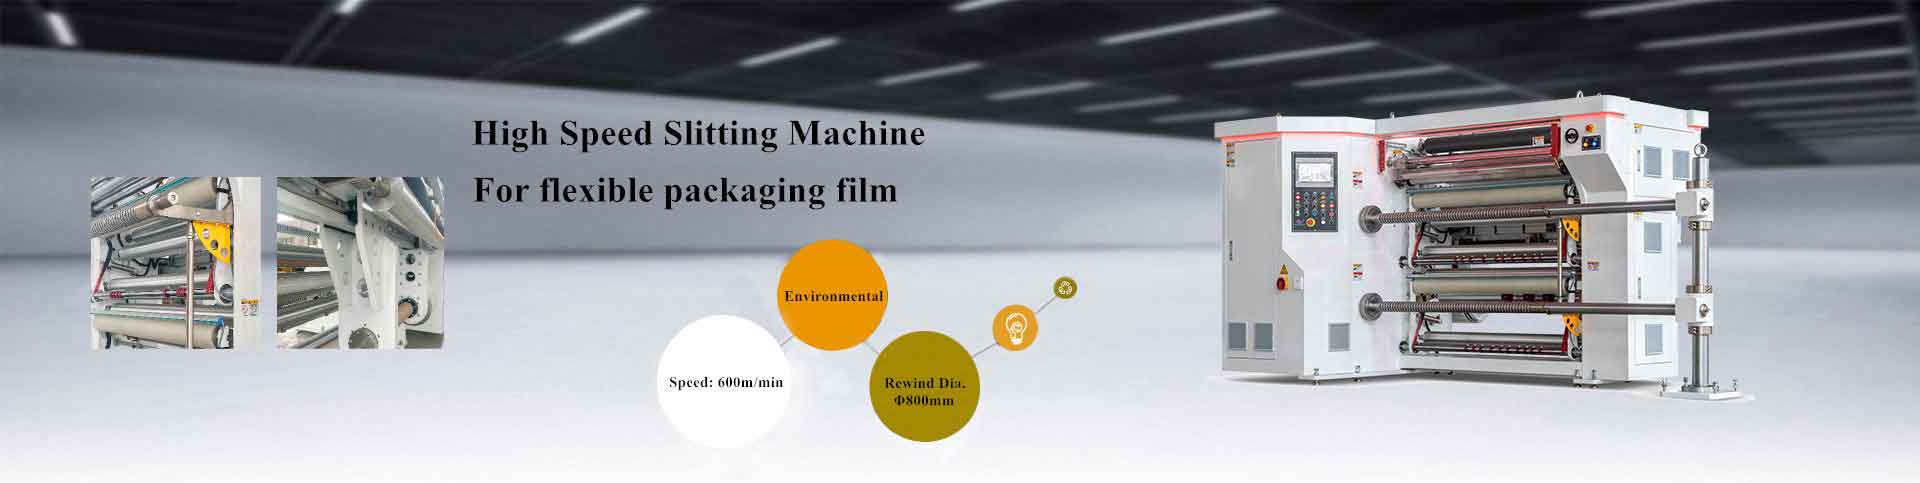 Máquina de corte de alta velocidad para película de embalaje flexible